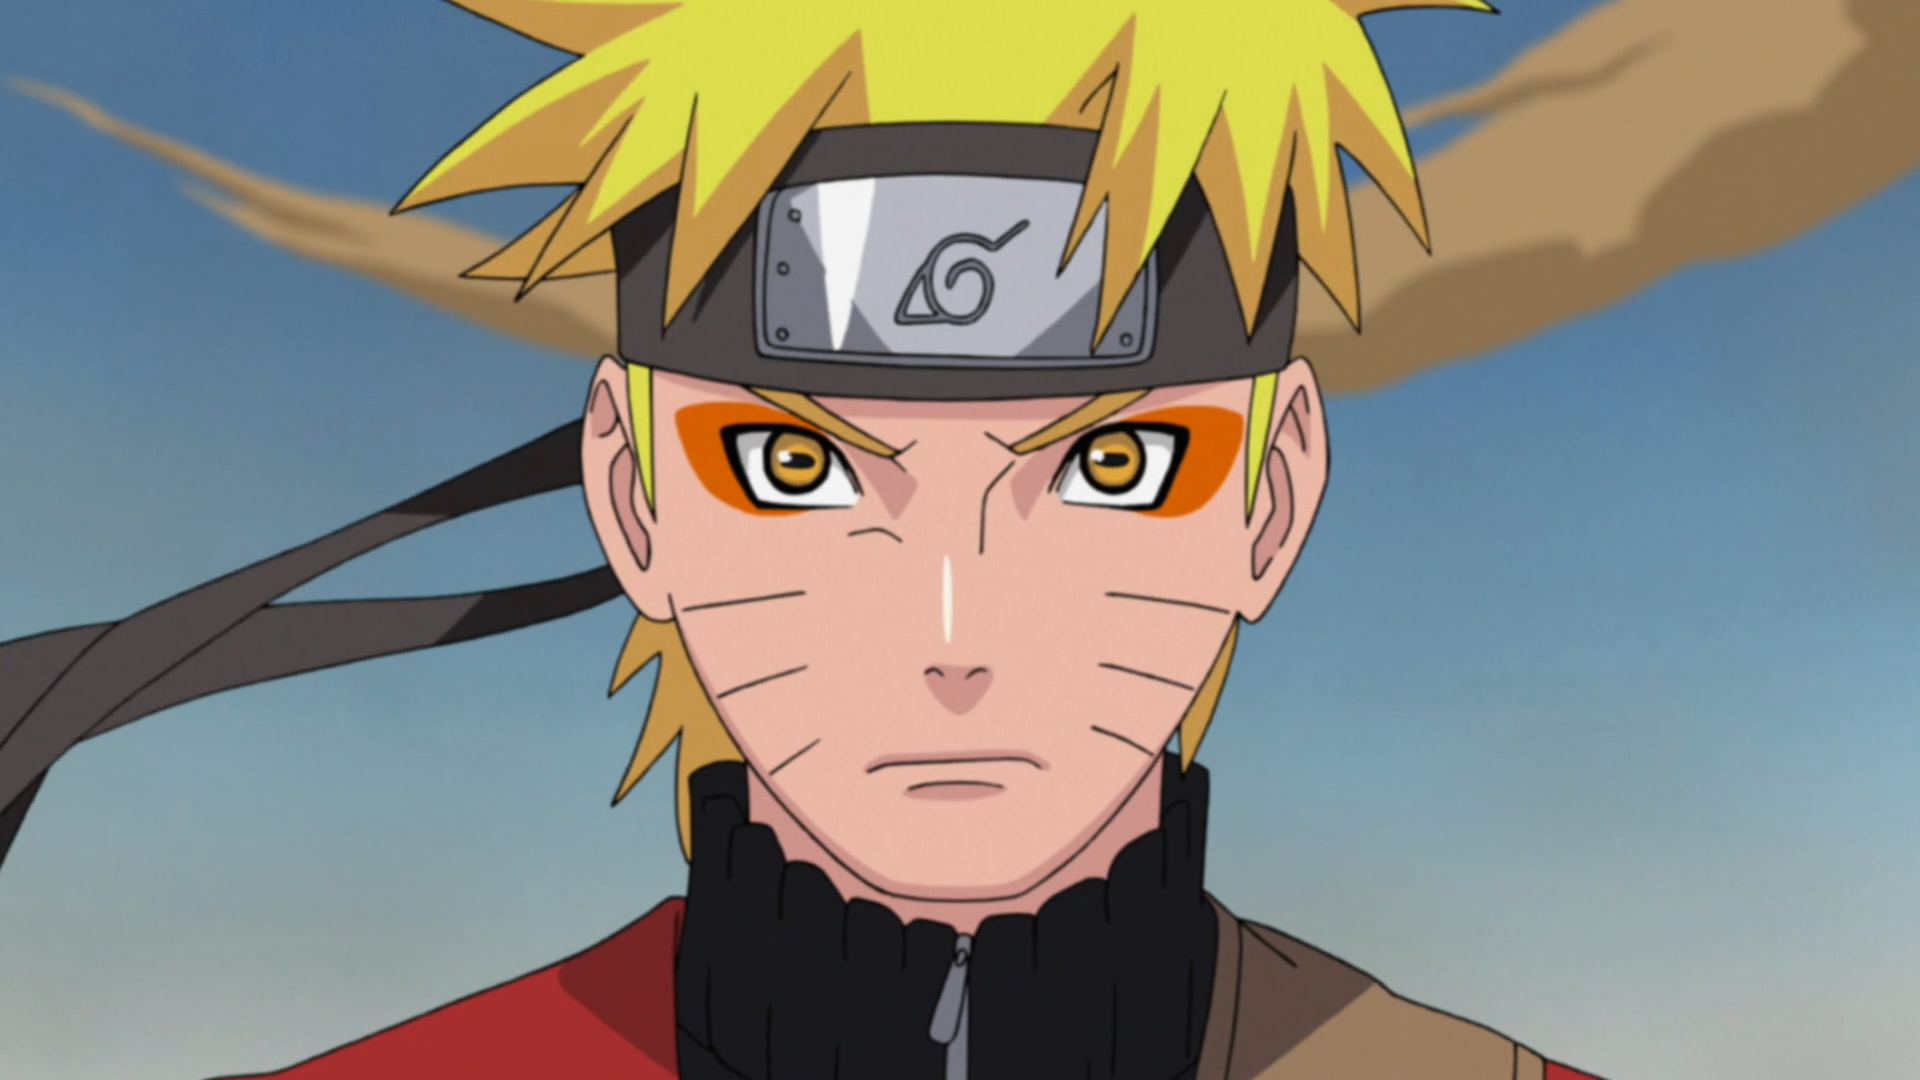 Naruto Anime Heroes Naruto Uzumaki Sage of Six Paths Mode Action Figure